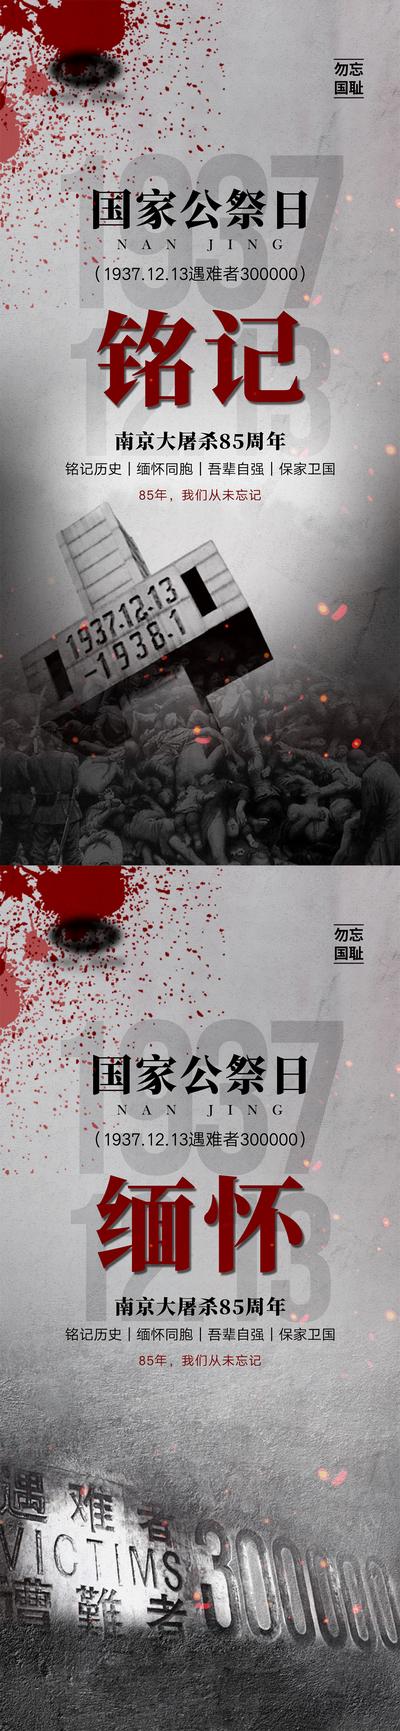 【南门网】默哀 海报 国家 公祭日 南京大屠杀 纪念日 公历节日 缅怀